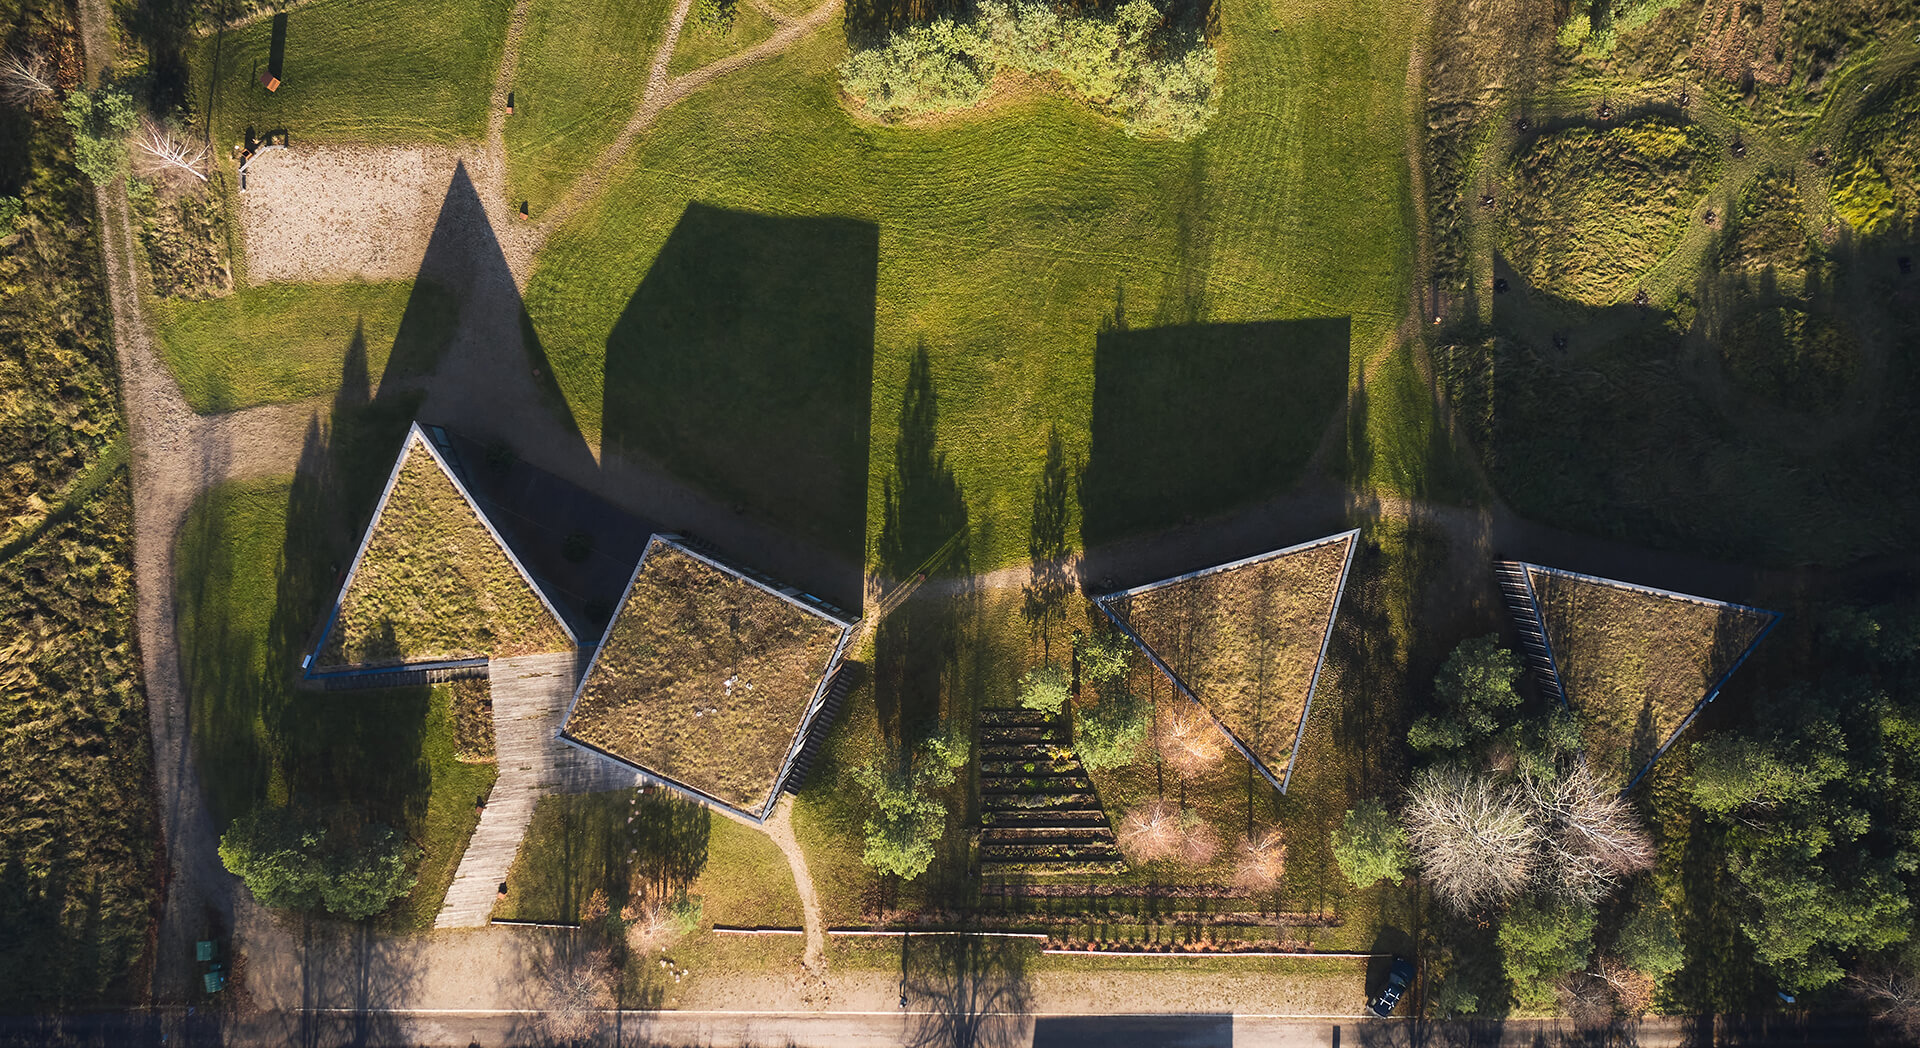 VAS-Architektai-Vilniuje-Architektura-inTegra-House-Ofisas-gamtoje-Sinergija-menas-gamta-Semeliskes-trikampiai-pastatai-5